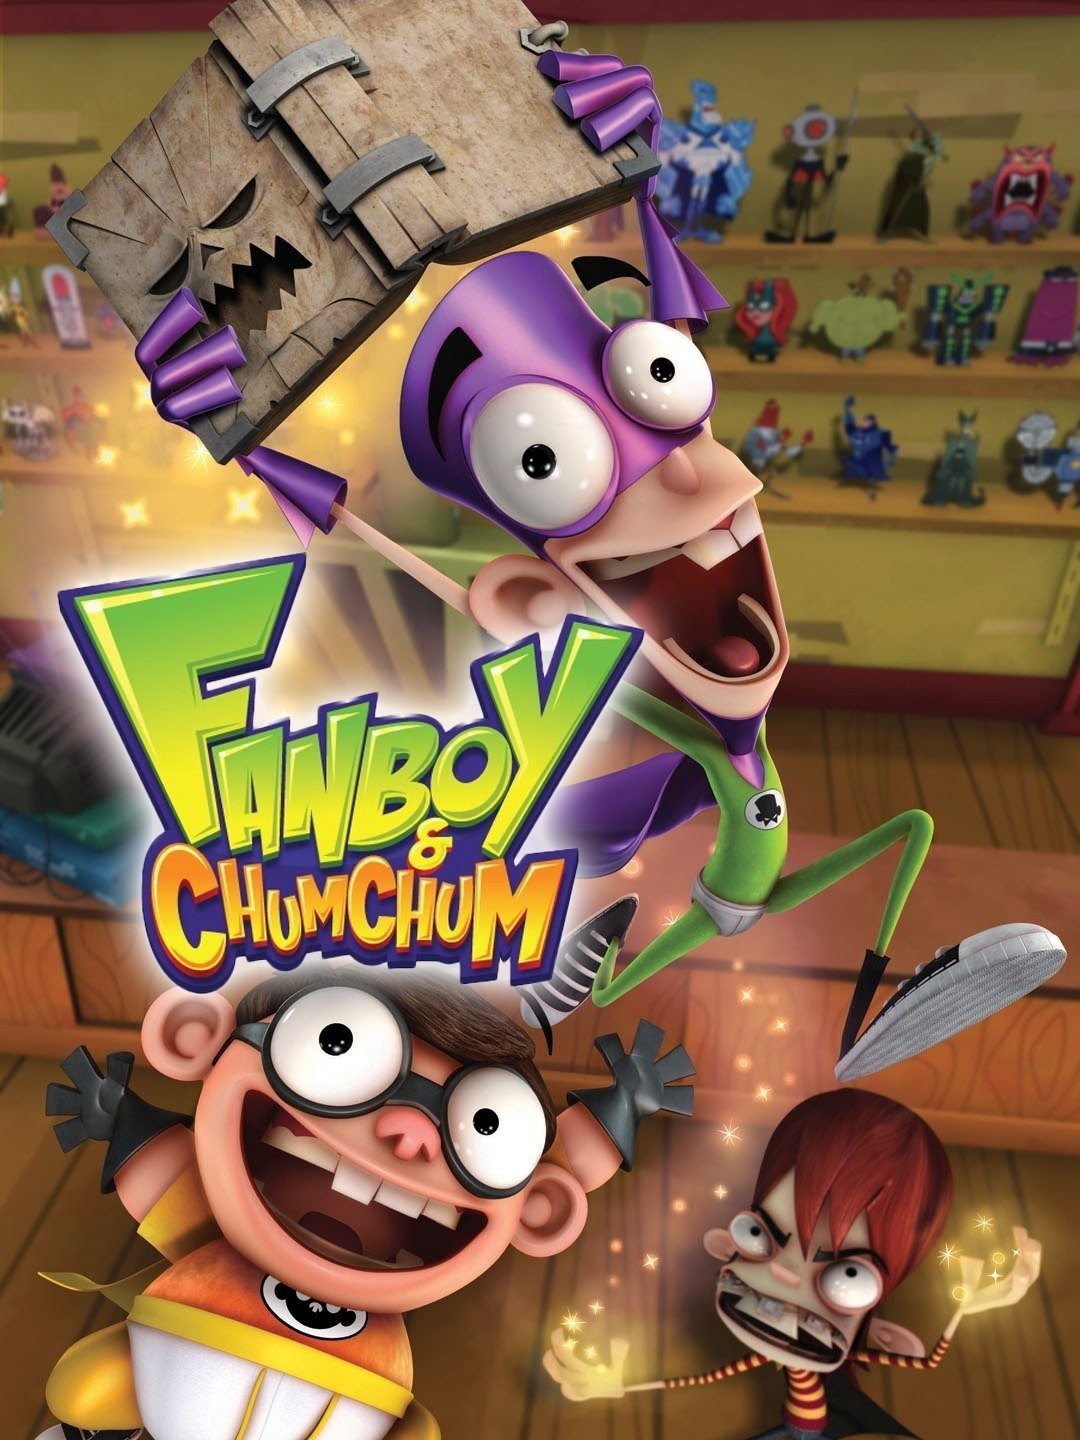 Fanboy & Chum Chum - The Big Cartoon Wiki